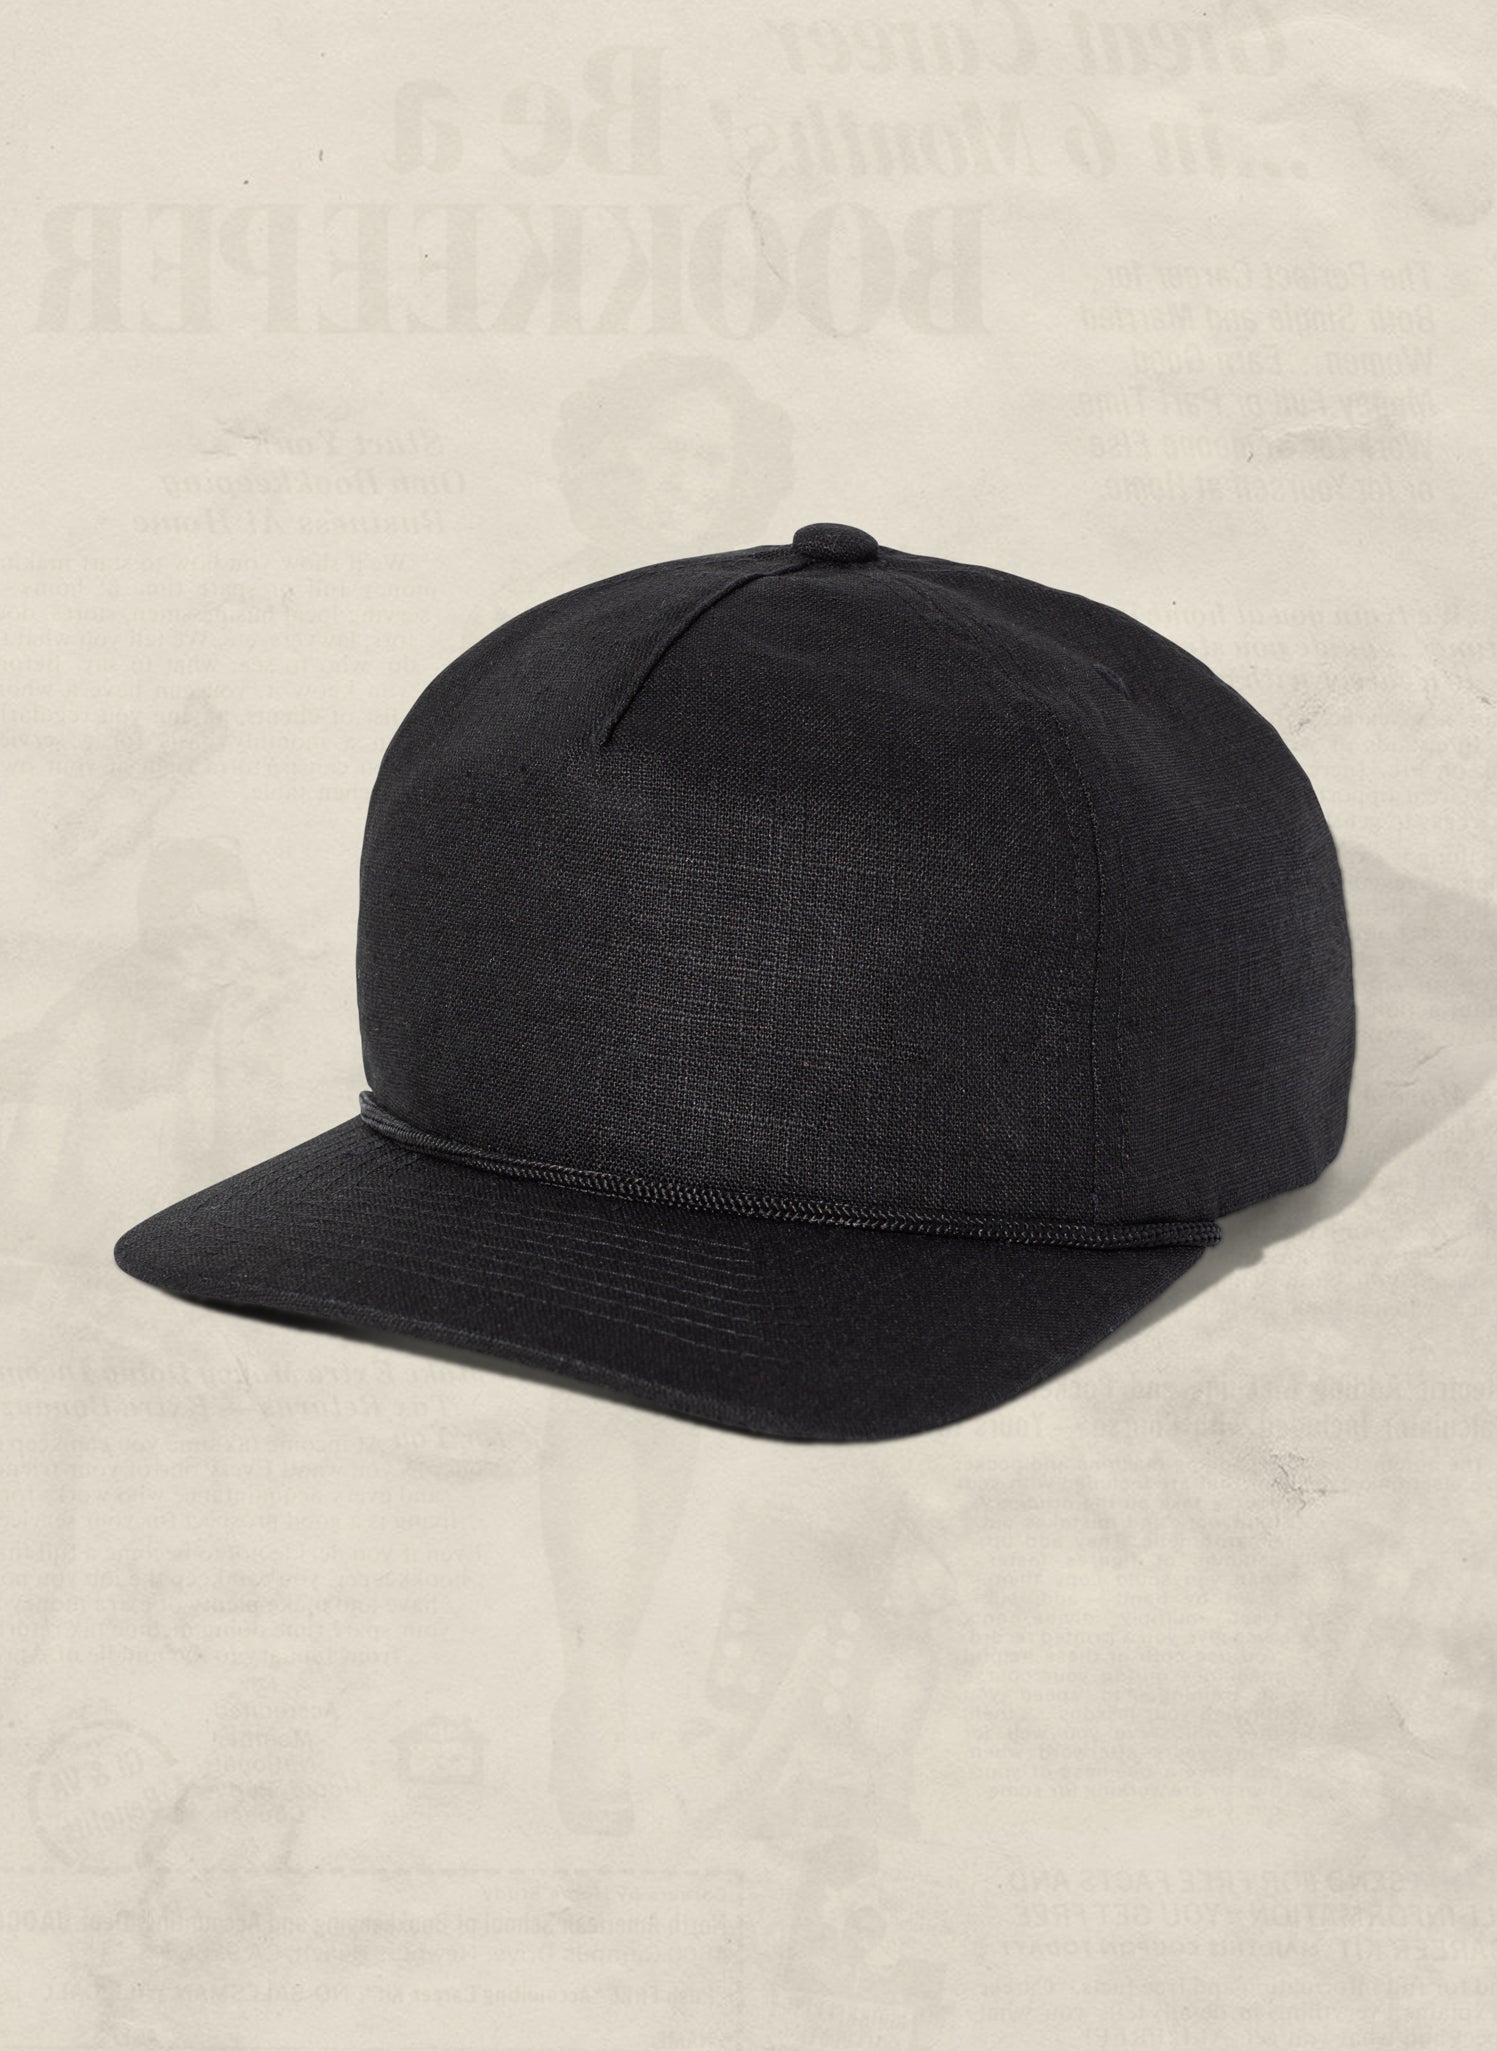 Efterligning straf tro på Hemp Field Trip Trucker Hat (+4 colors) – weld mfg